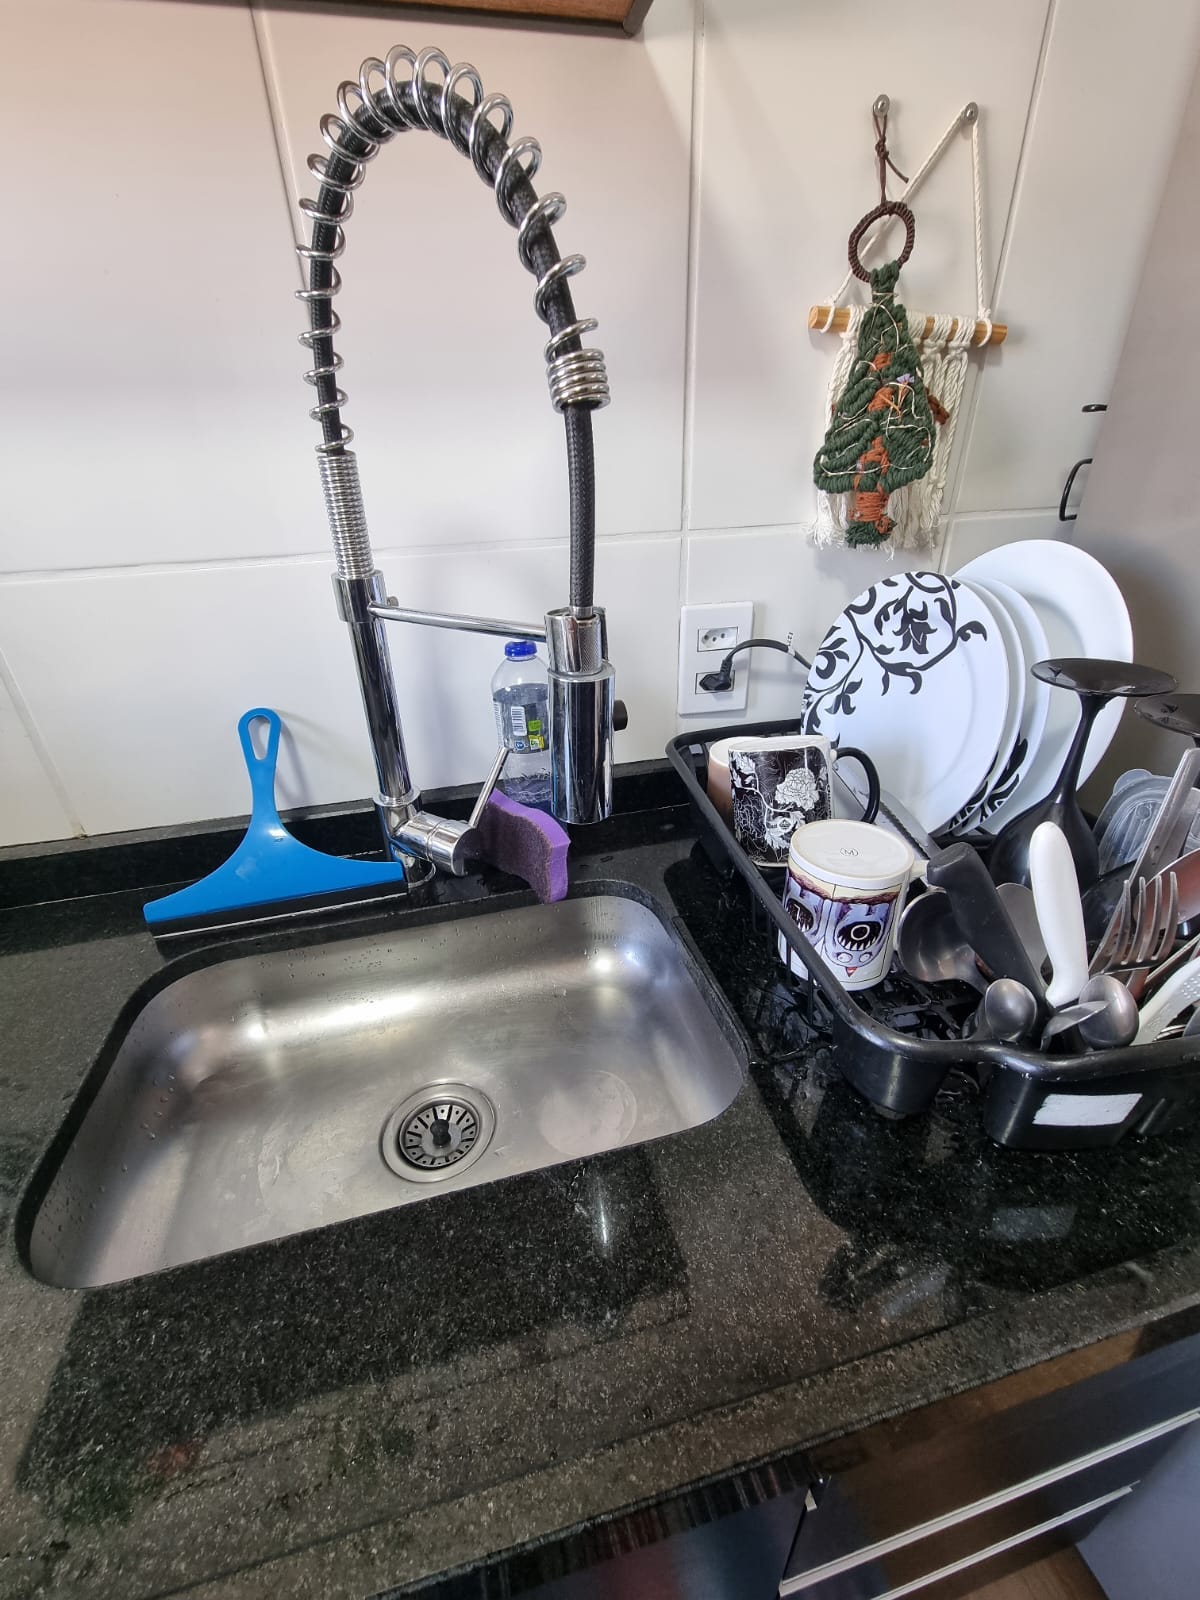 Foto da pia do apartamento em que moro, mostrando o escorredor cheio de pratos, canecas e talheres devidamente lavados.